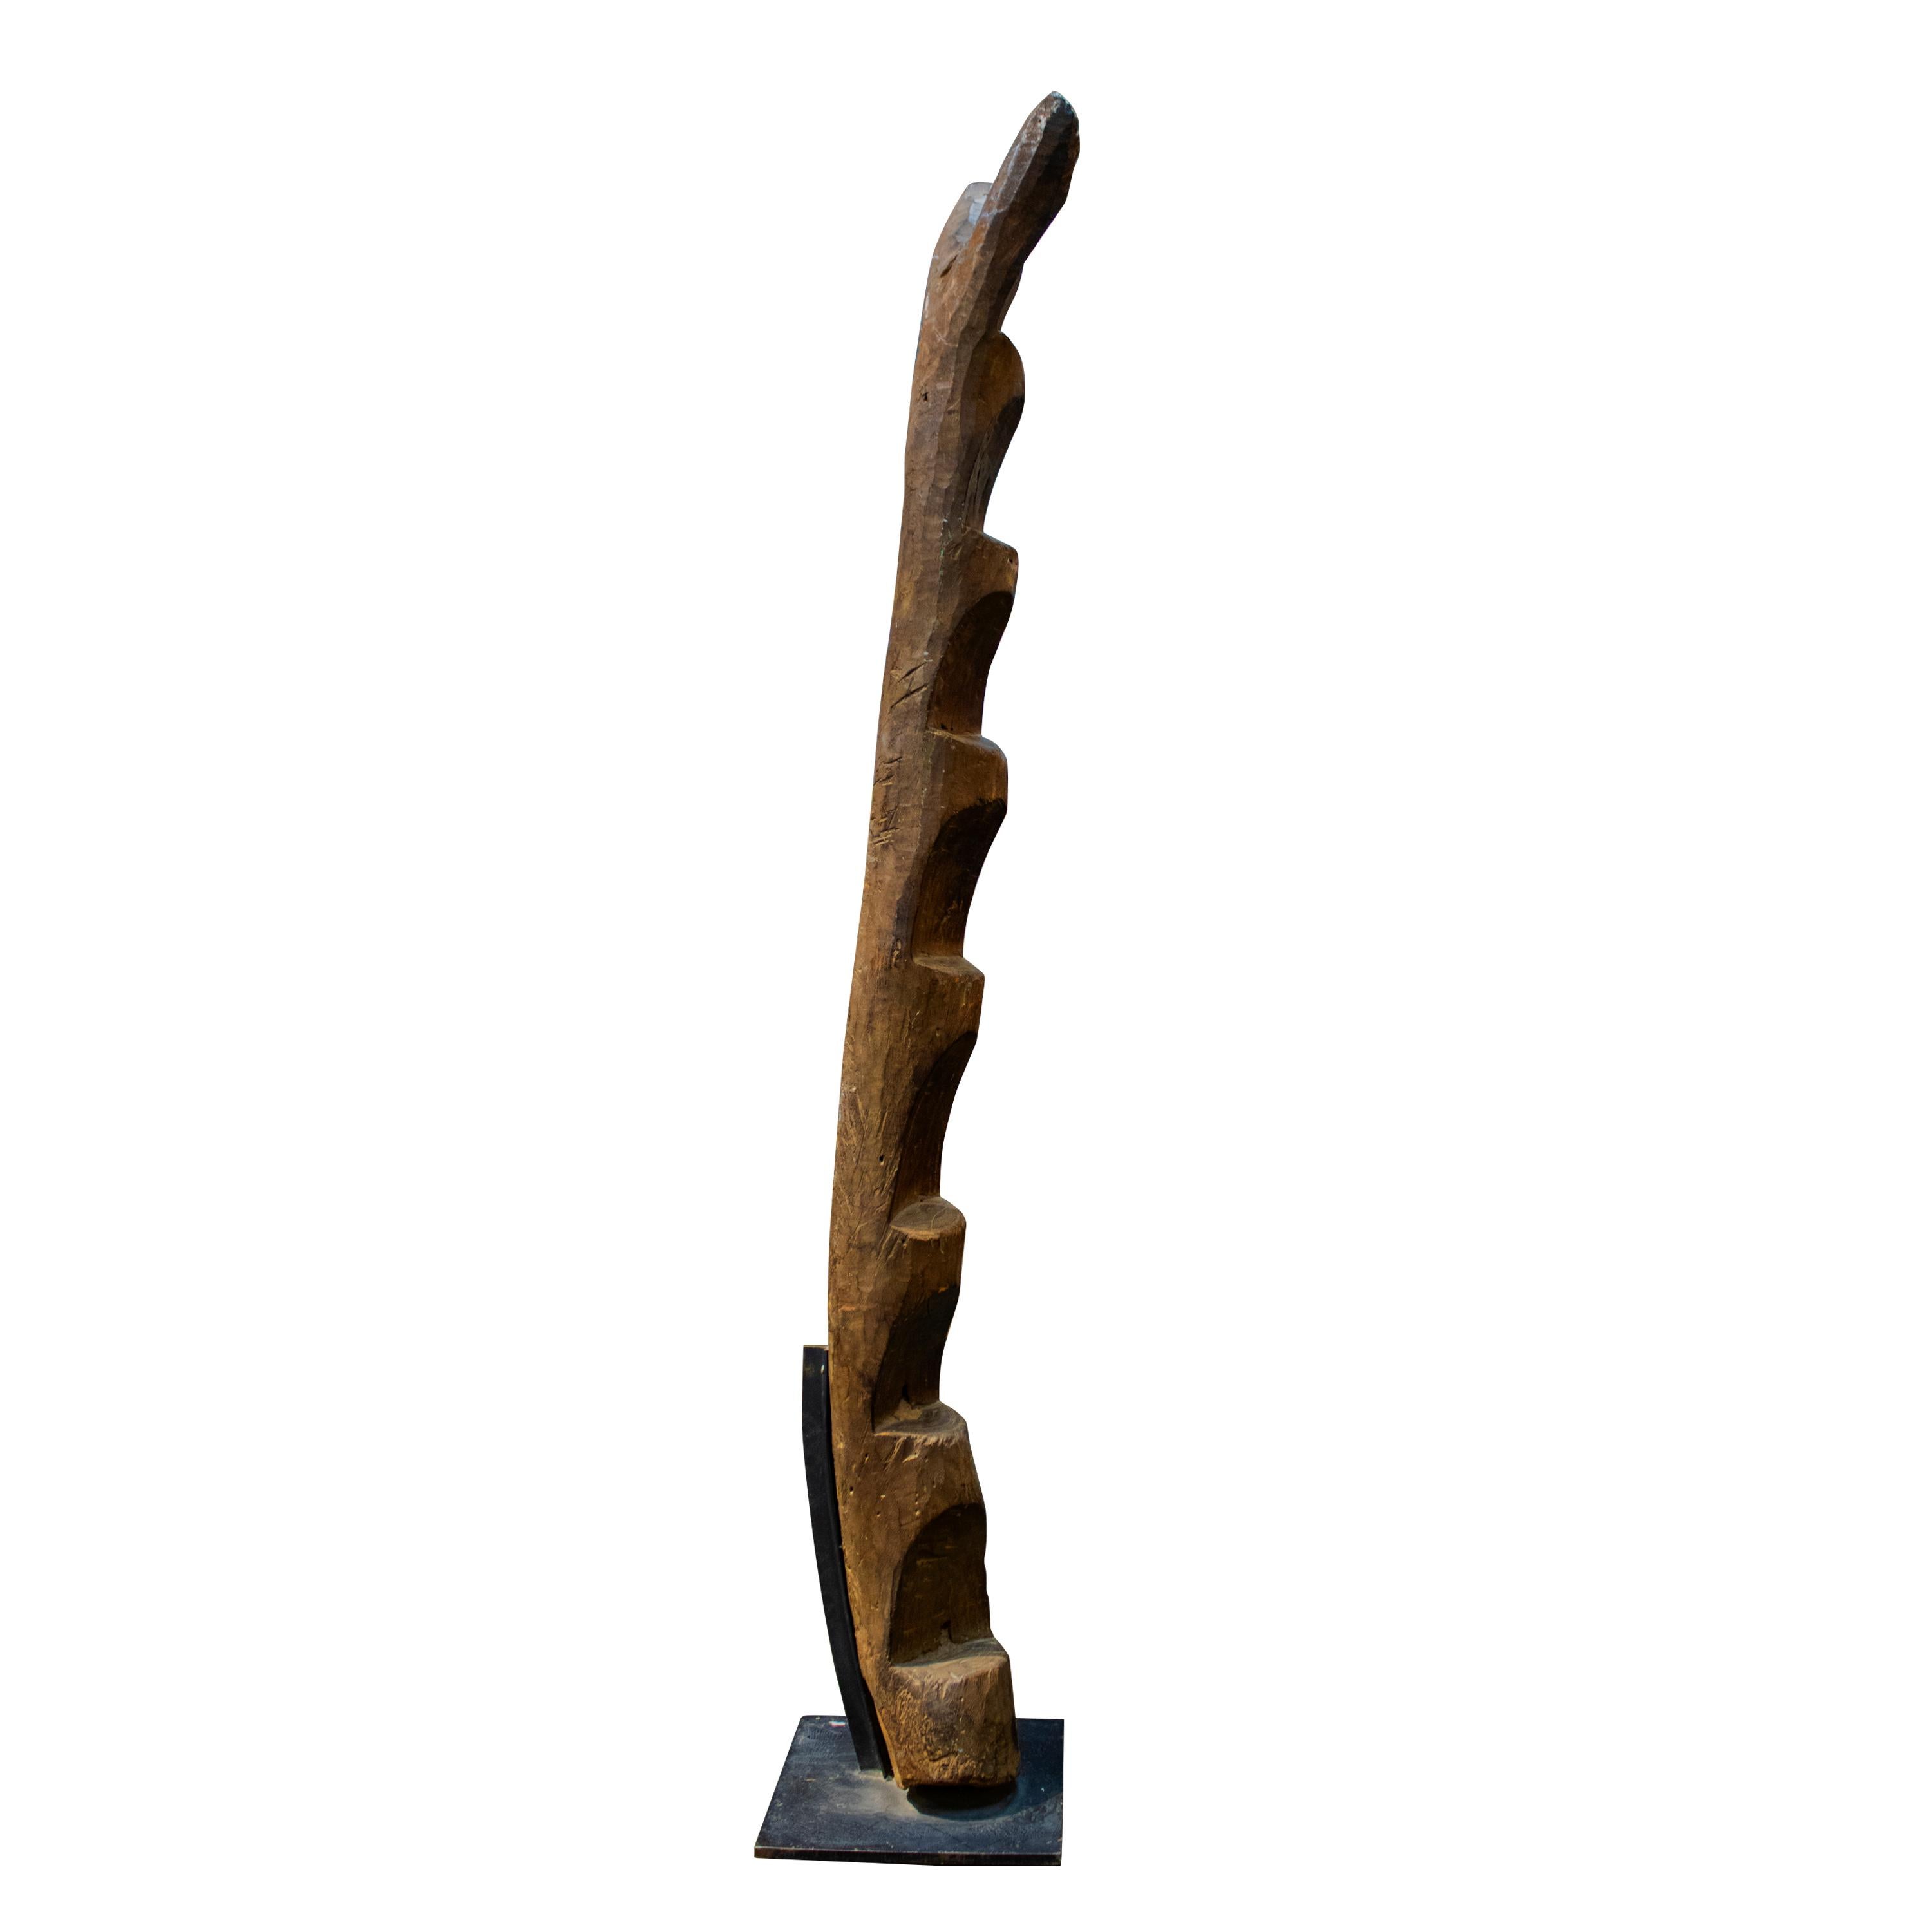 Une échelle Dogon classique en bois foncé, montée sur un solide support en métal. 

Le peuple dogon vit dans le sud-est du Mali et au Burkina Faso. Bien qu'entourés de musulmans, ils sont restés fidèles à leur religion ancestrale et ont maintenu